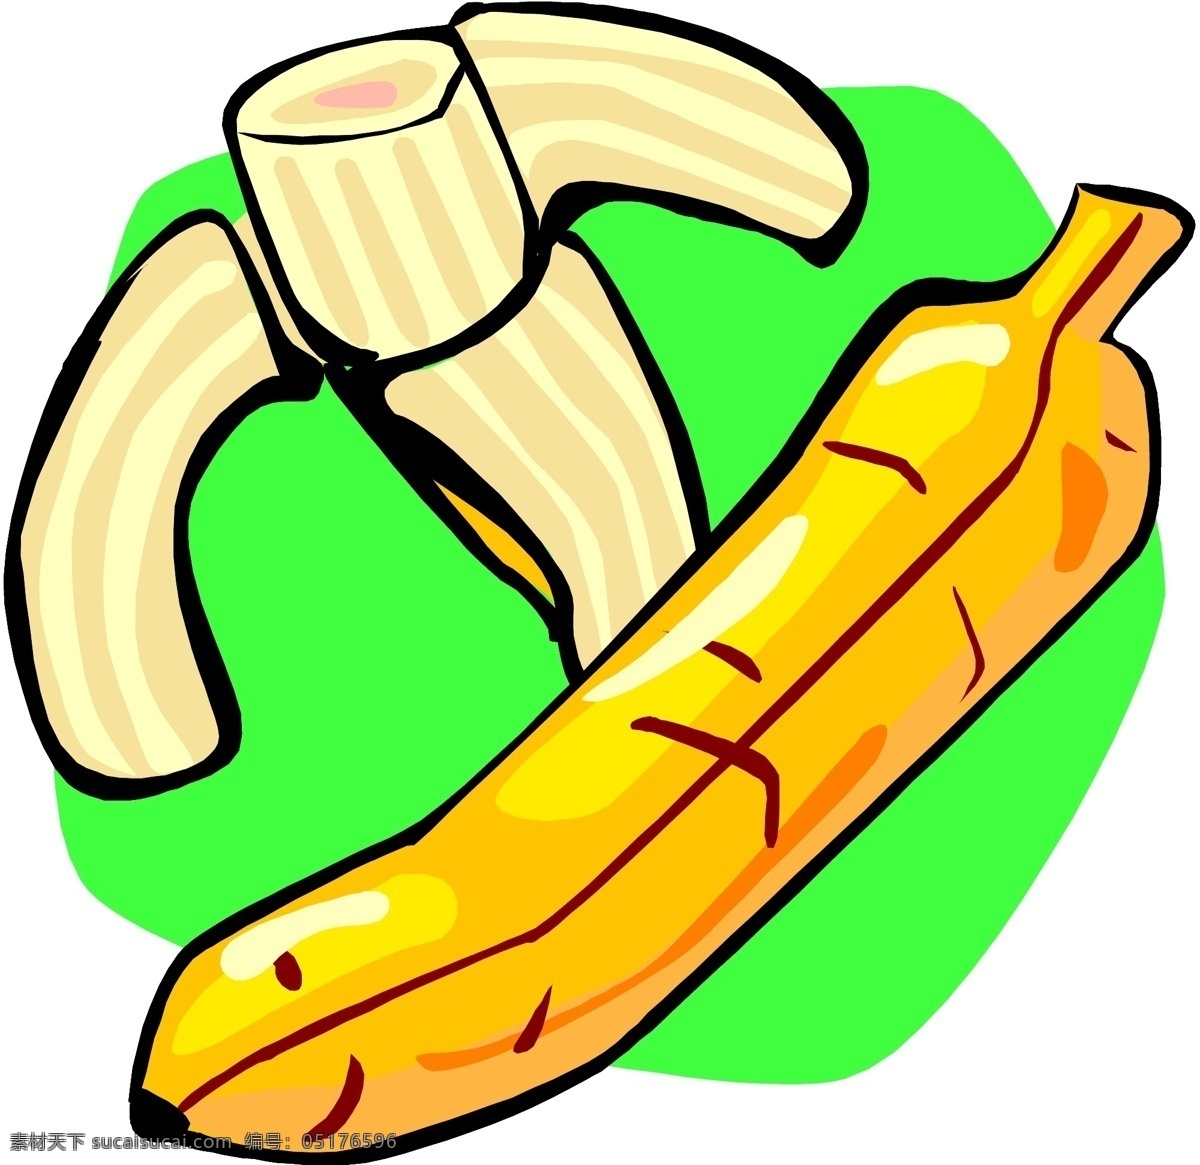 香蕉 矢量 生物 世界 矢量素材 矢量图 蔬果 水果 水果矢量图 香蕉矢量素材 拨香蕉 香蕉皮 其他矢量图